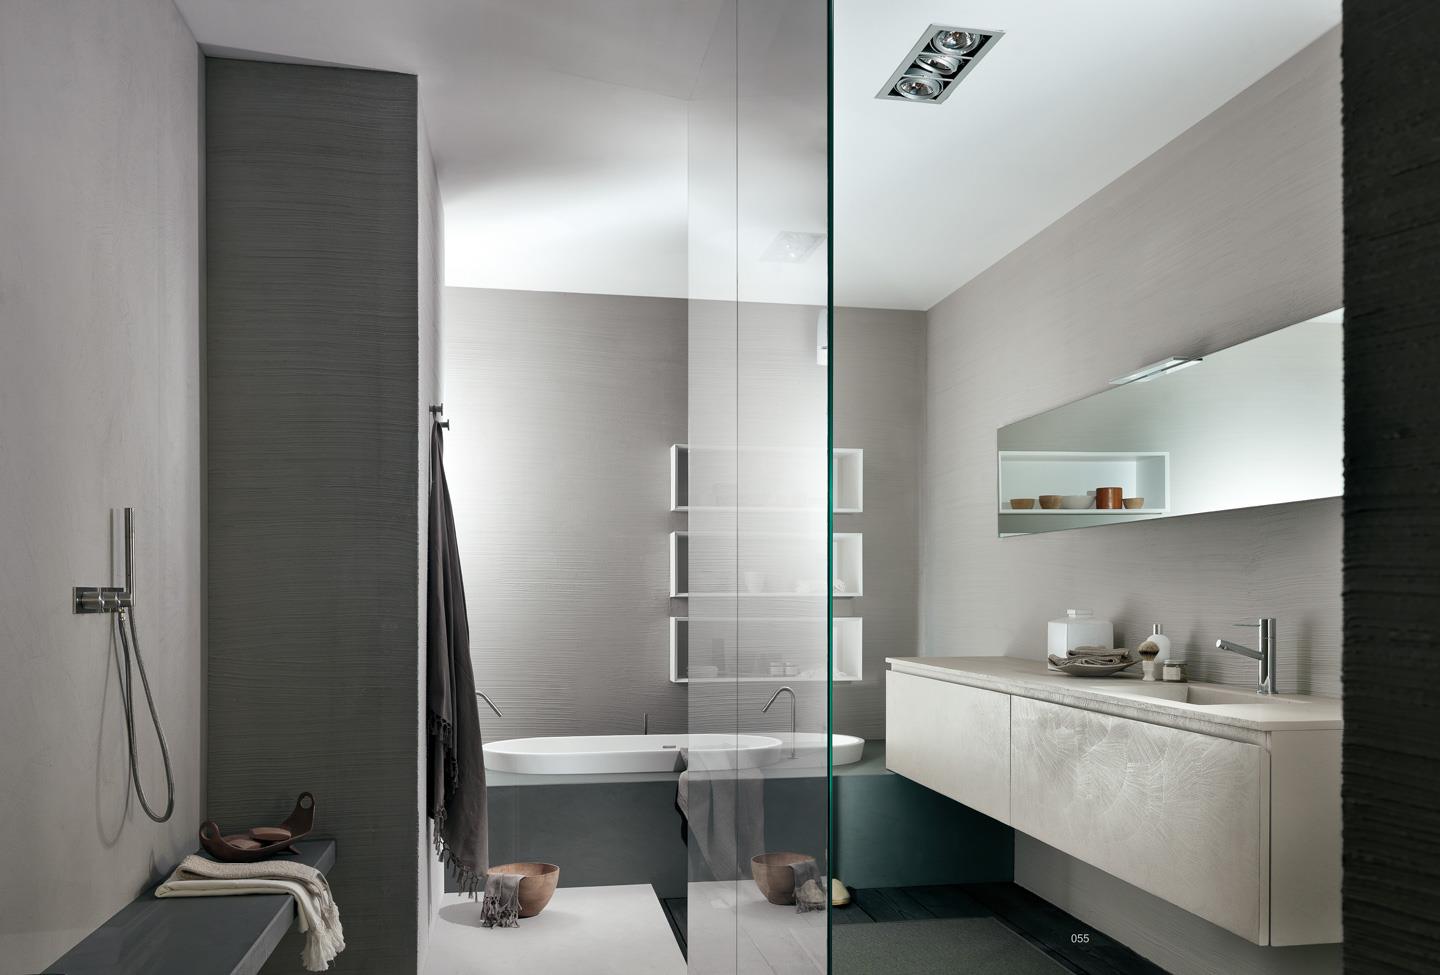 Rechtzetten correct Rust uit Italiaans design voor de badkamer van Modulnova - UW-badkamer.nl